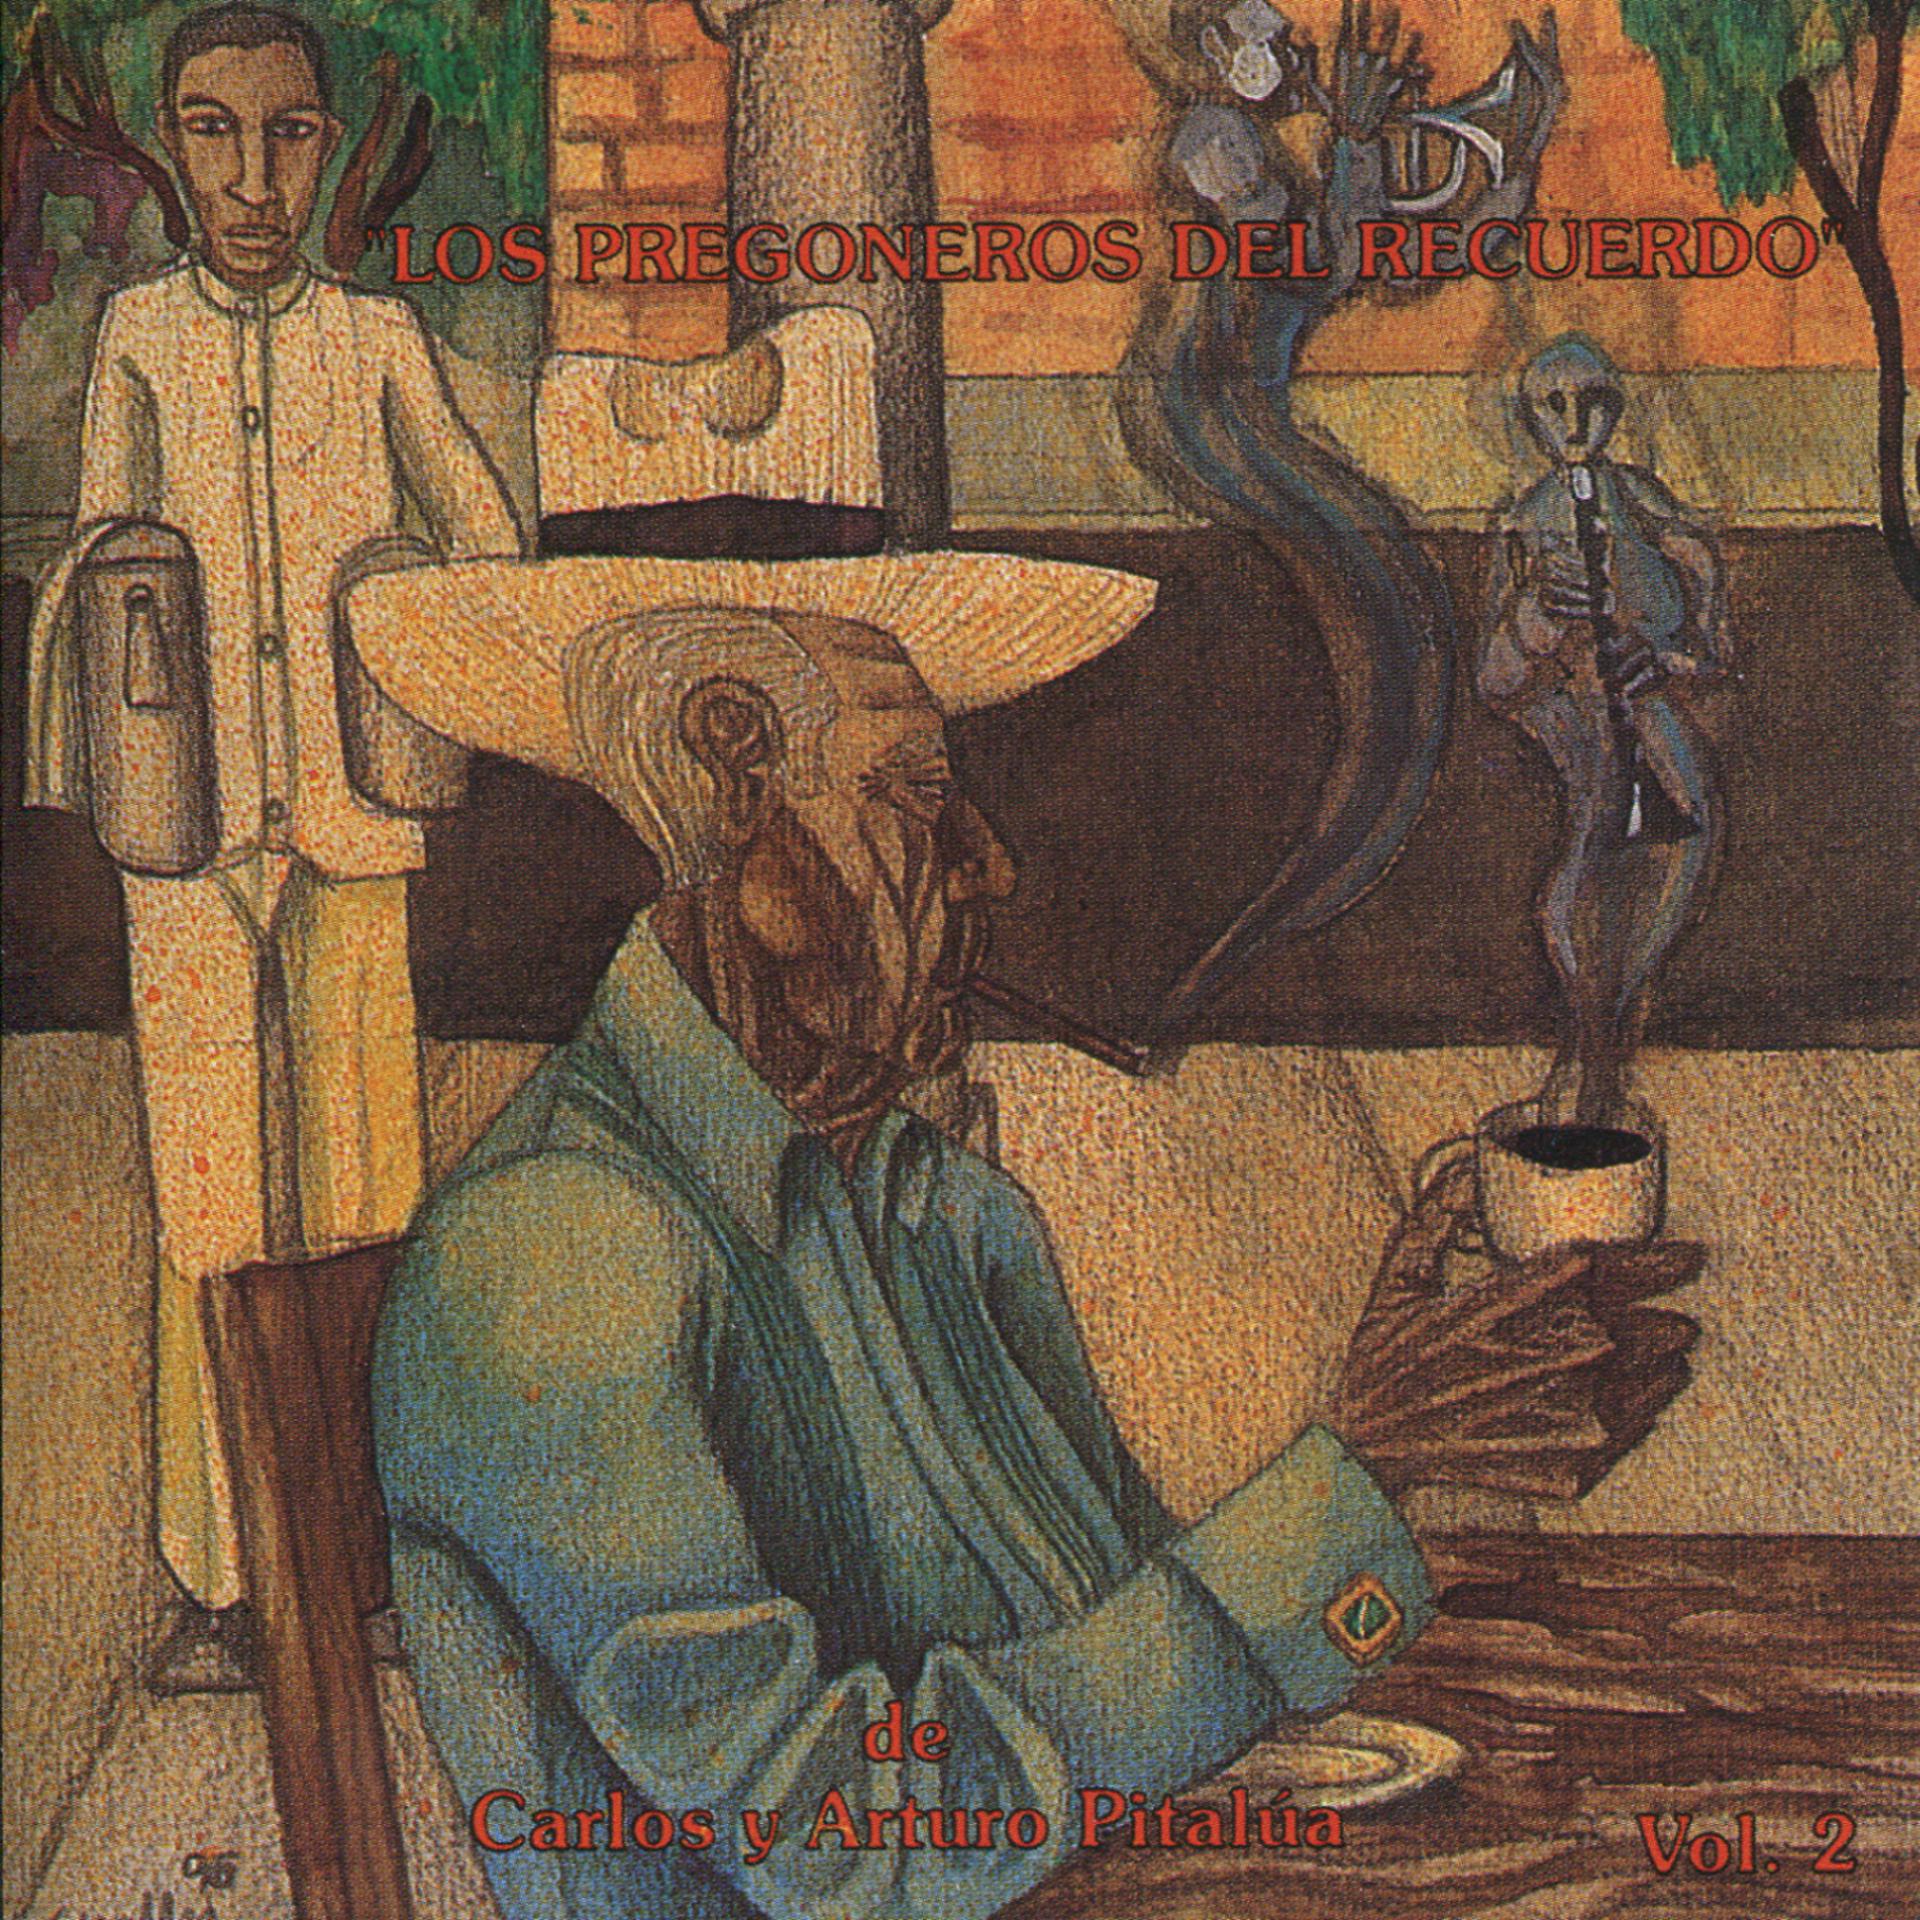 Постер альбома "Los Veracruzanísimos" - Pregoneros del Recuerdo vol. 2